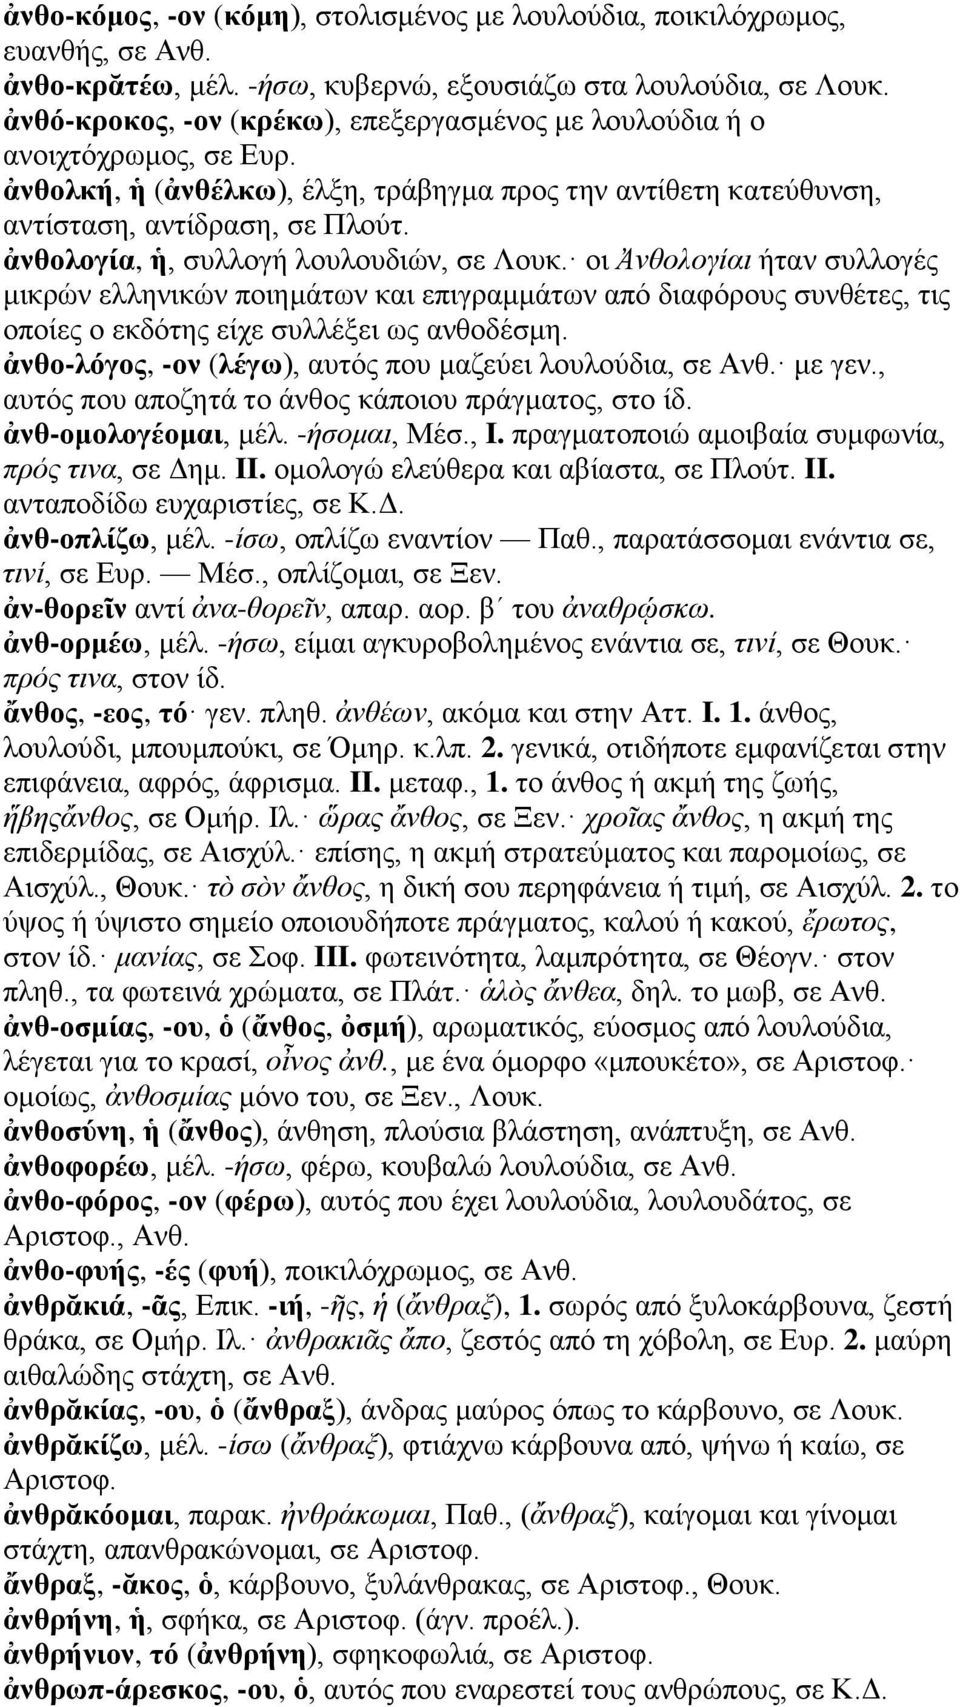 ἀνθολογία, ἡ, συλλογή λουλουδιών, σε Λουκ. οι Ἀνθολογίαι ήταν συλλογές μικρών ελληνικών ποιημάτων και επιγραμμάτων από διαφόρους συνθέτες, τις οποίες ο εκδότης είχε συλλέξει ως ανθοδέσμη.